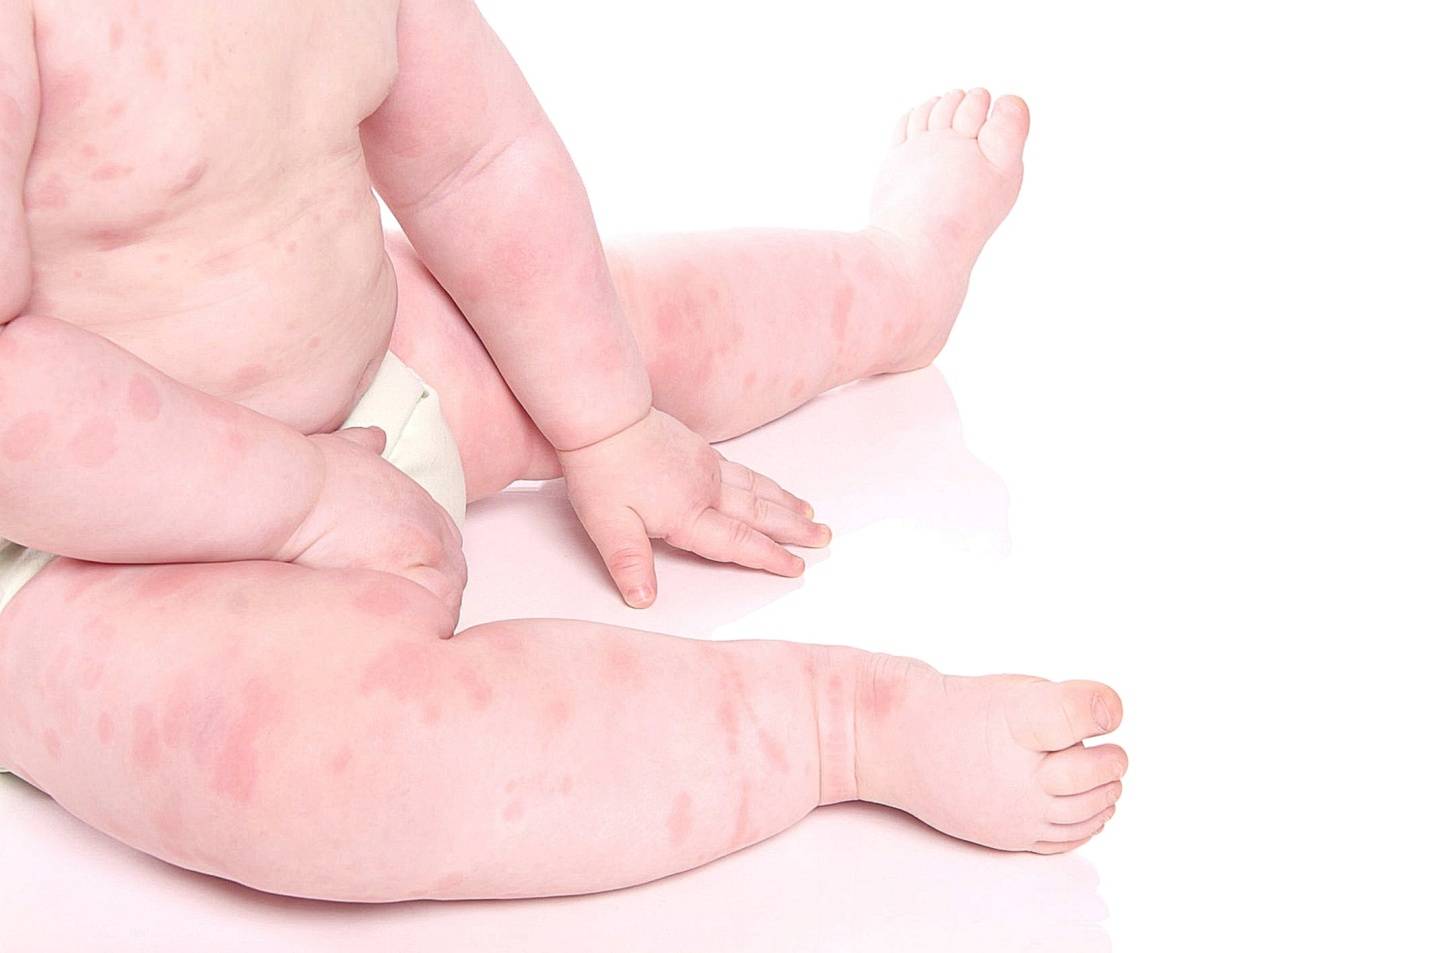 Аллергическая сыпь у детей: чем лечить высыпания на коже и теле, аллергия у детей до года, через сколько времени проходит, можно ли купать